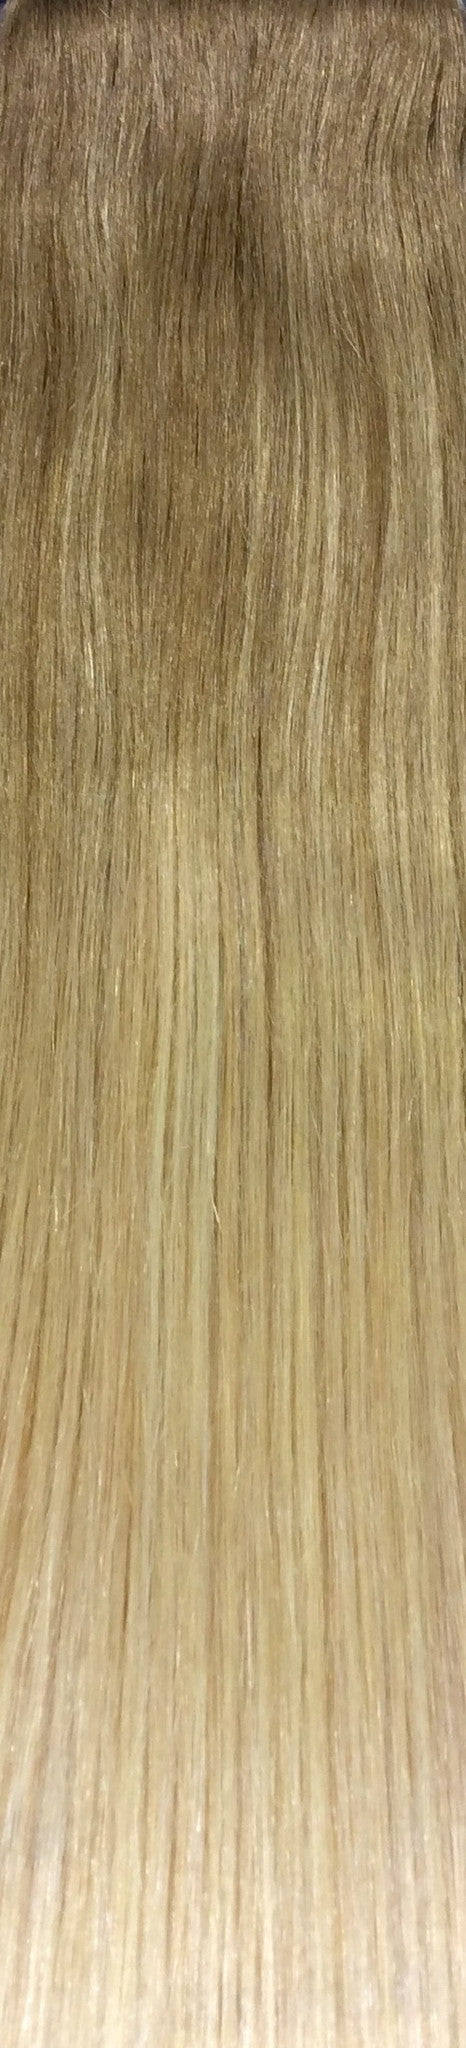 18" 100% Human Hair 7pcs Clip-In Balayage Color B8/24